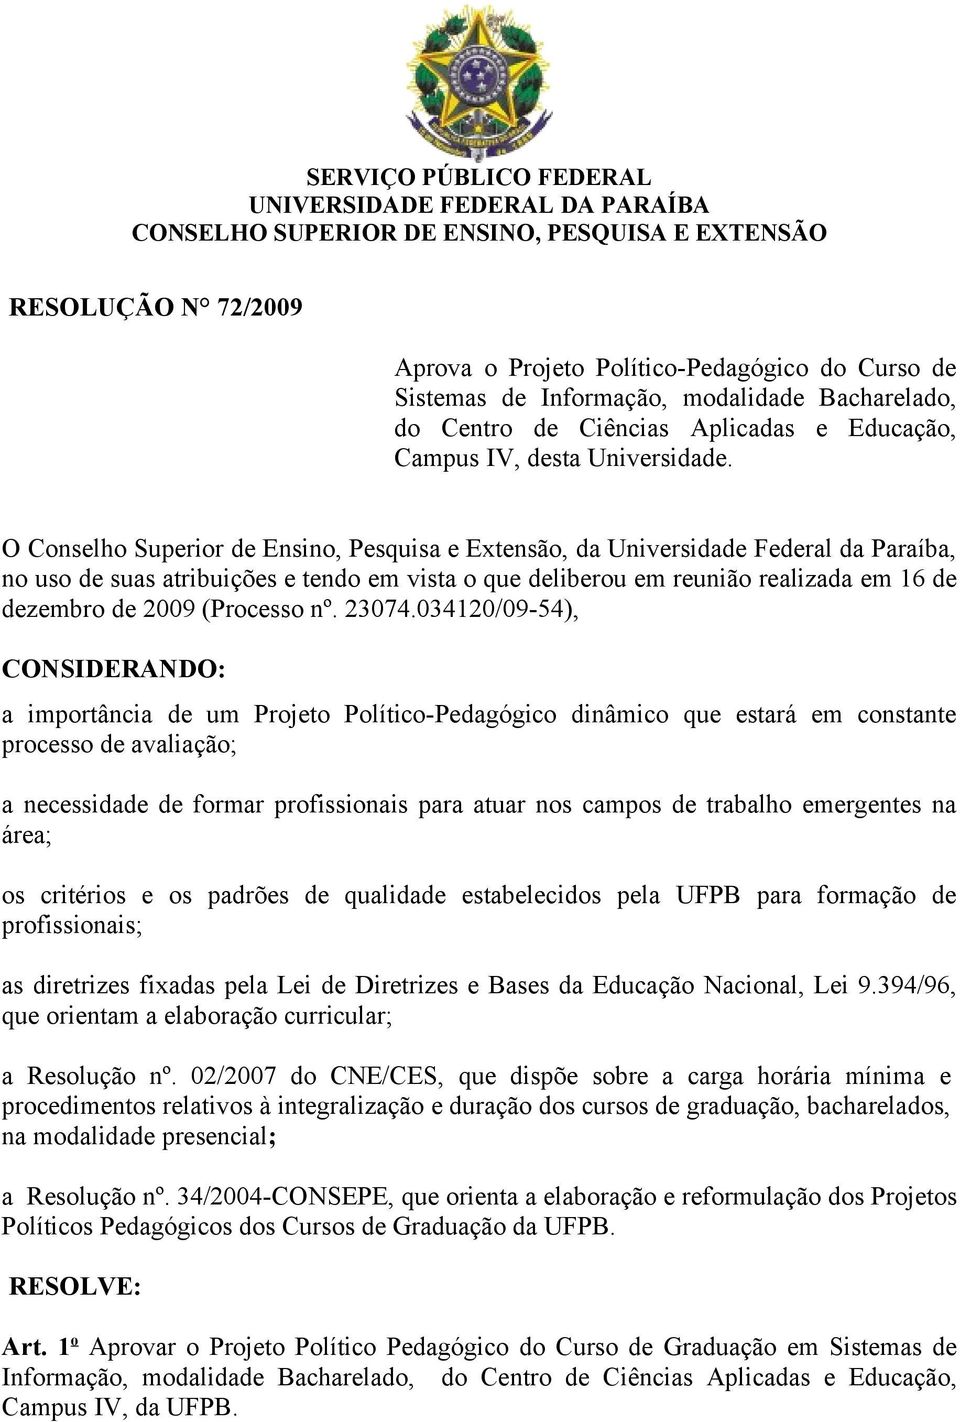 O Conselho Superior de Ensino, Pesquisa e Extensão, da Universidade Federal da Paraíba, no uso de suas atribuições e tendo em vista o que deliberou em reunião realizada em 16 de dezembro de 2009